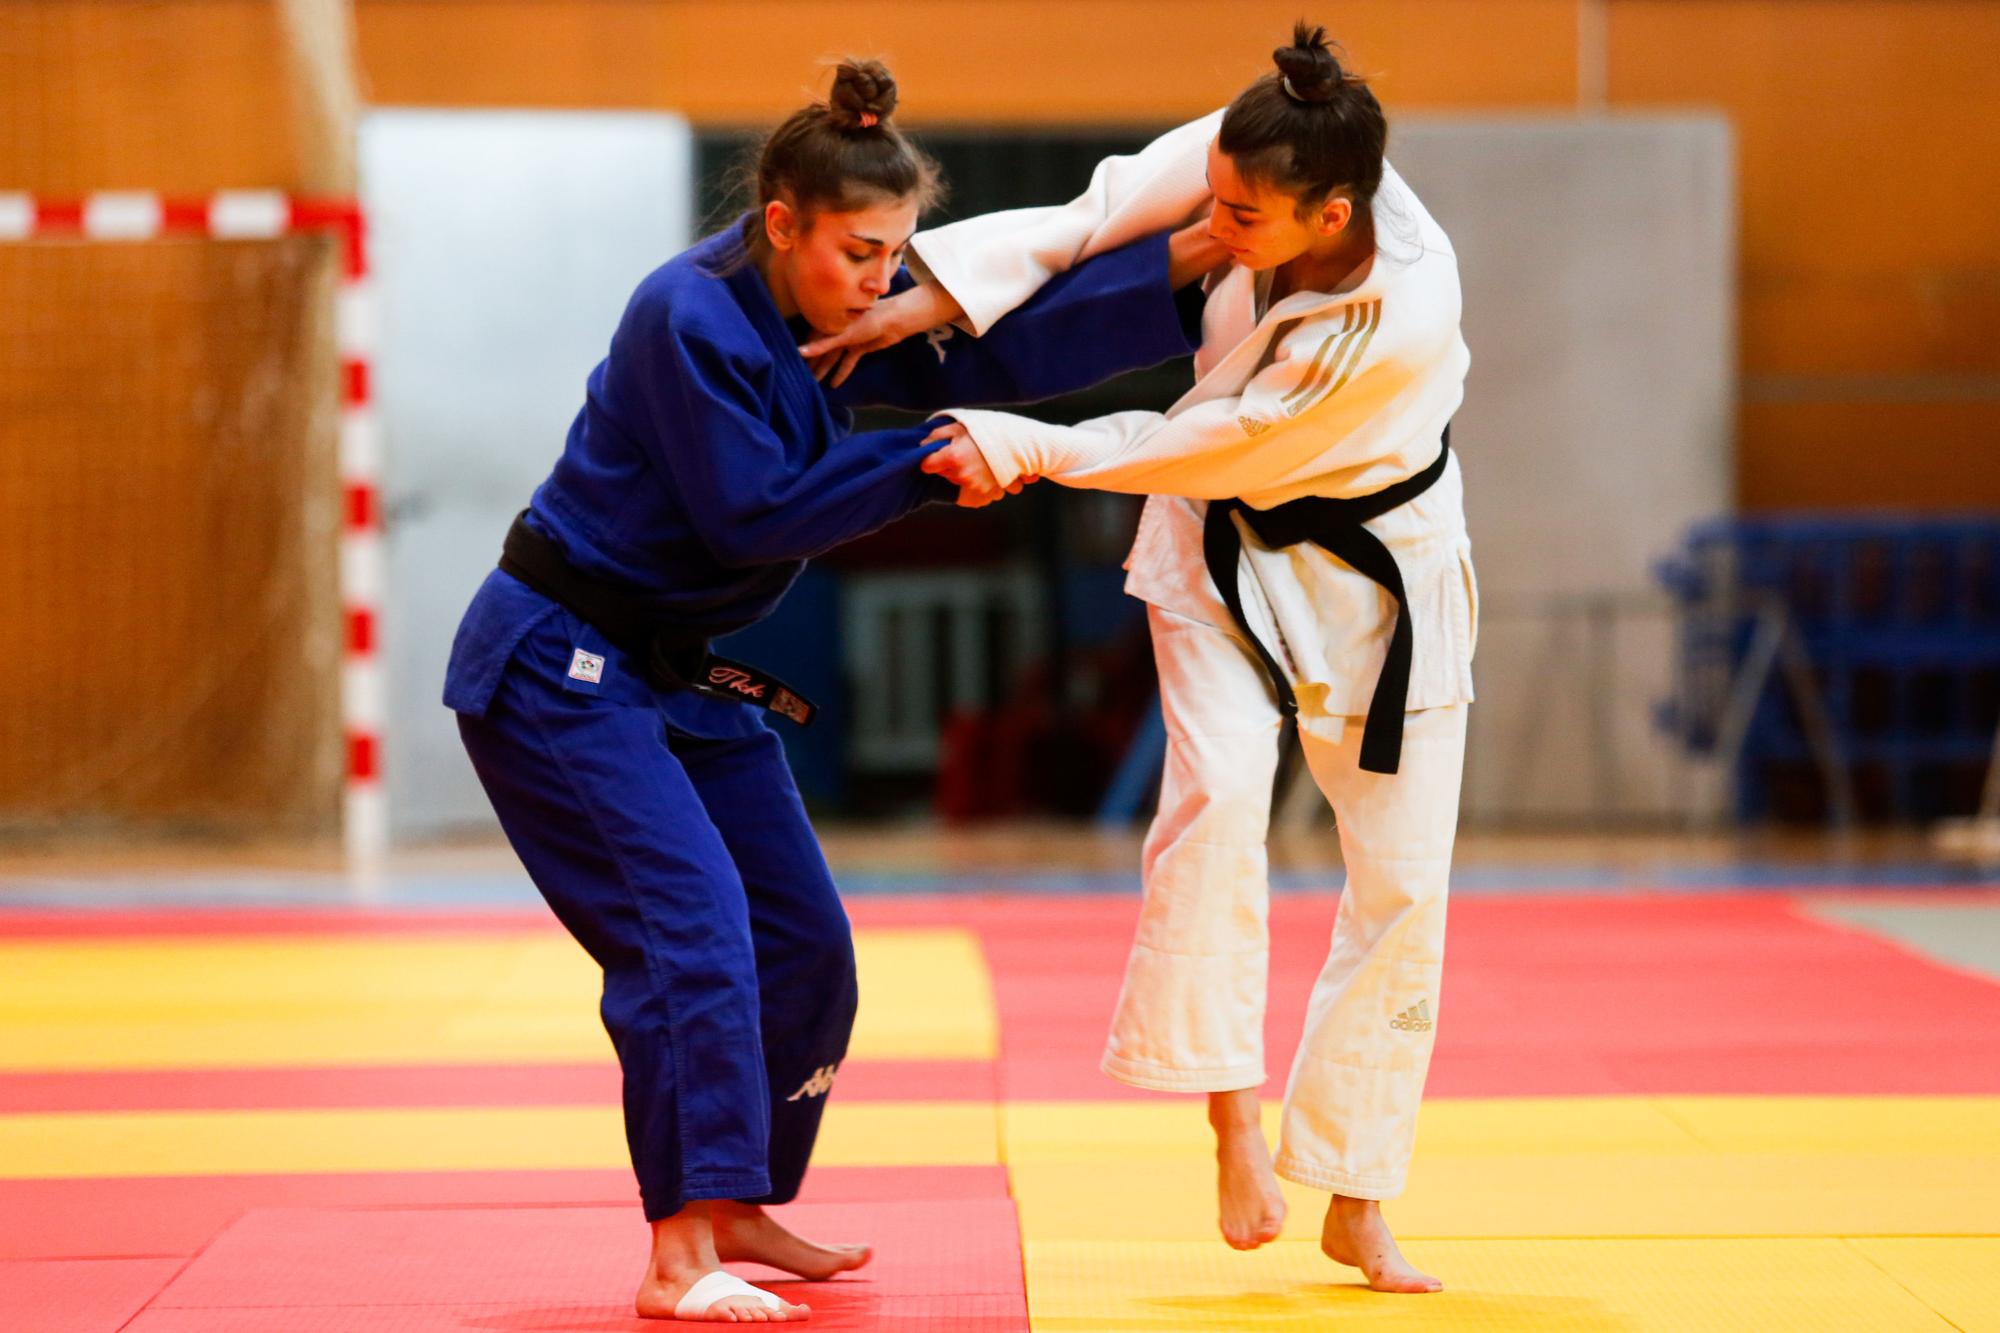 Campeonato de Baleares sub 21 de judo